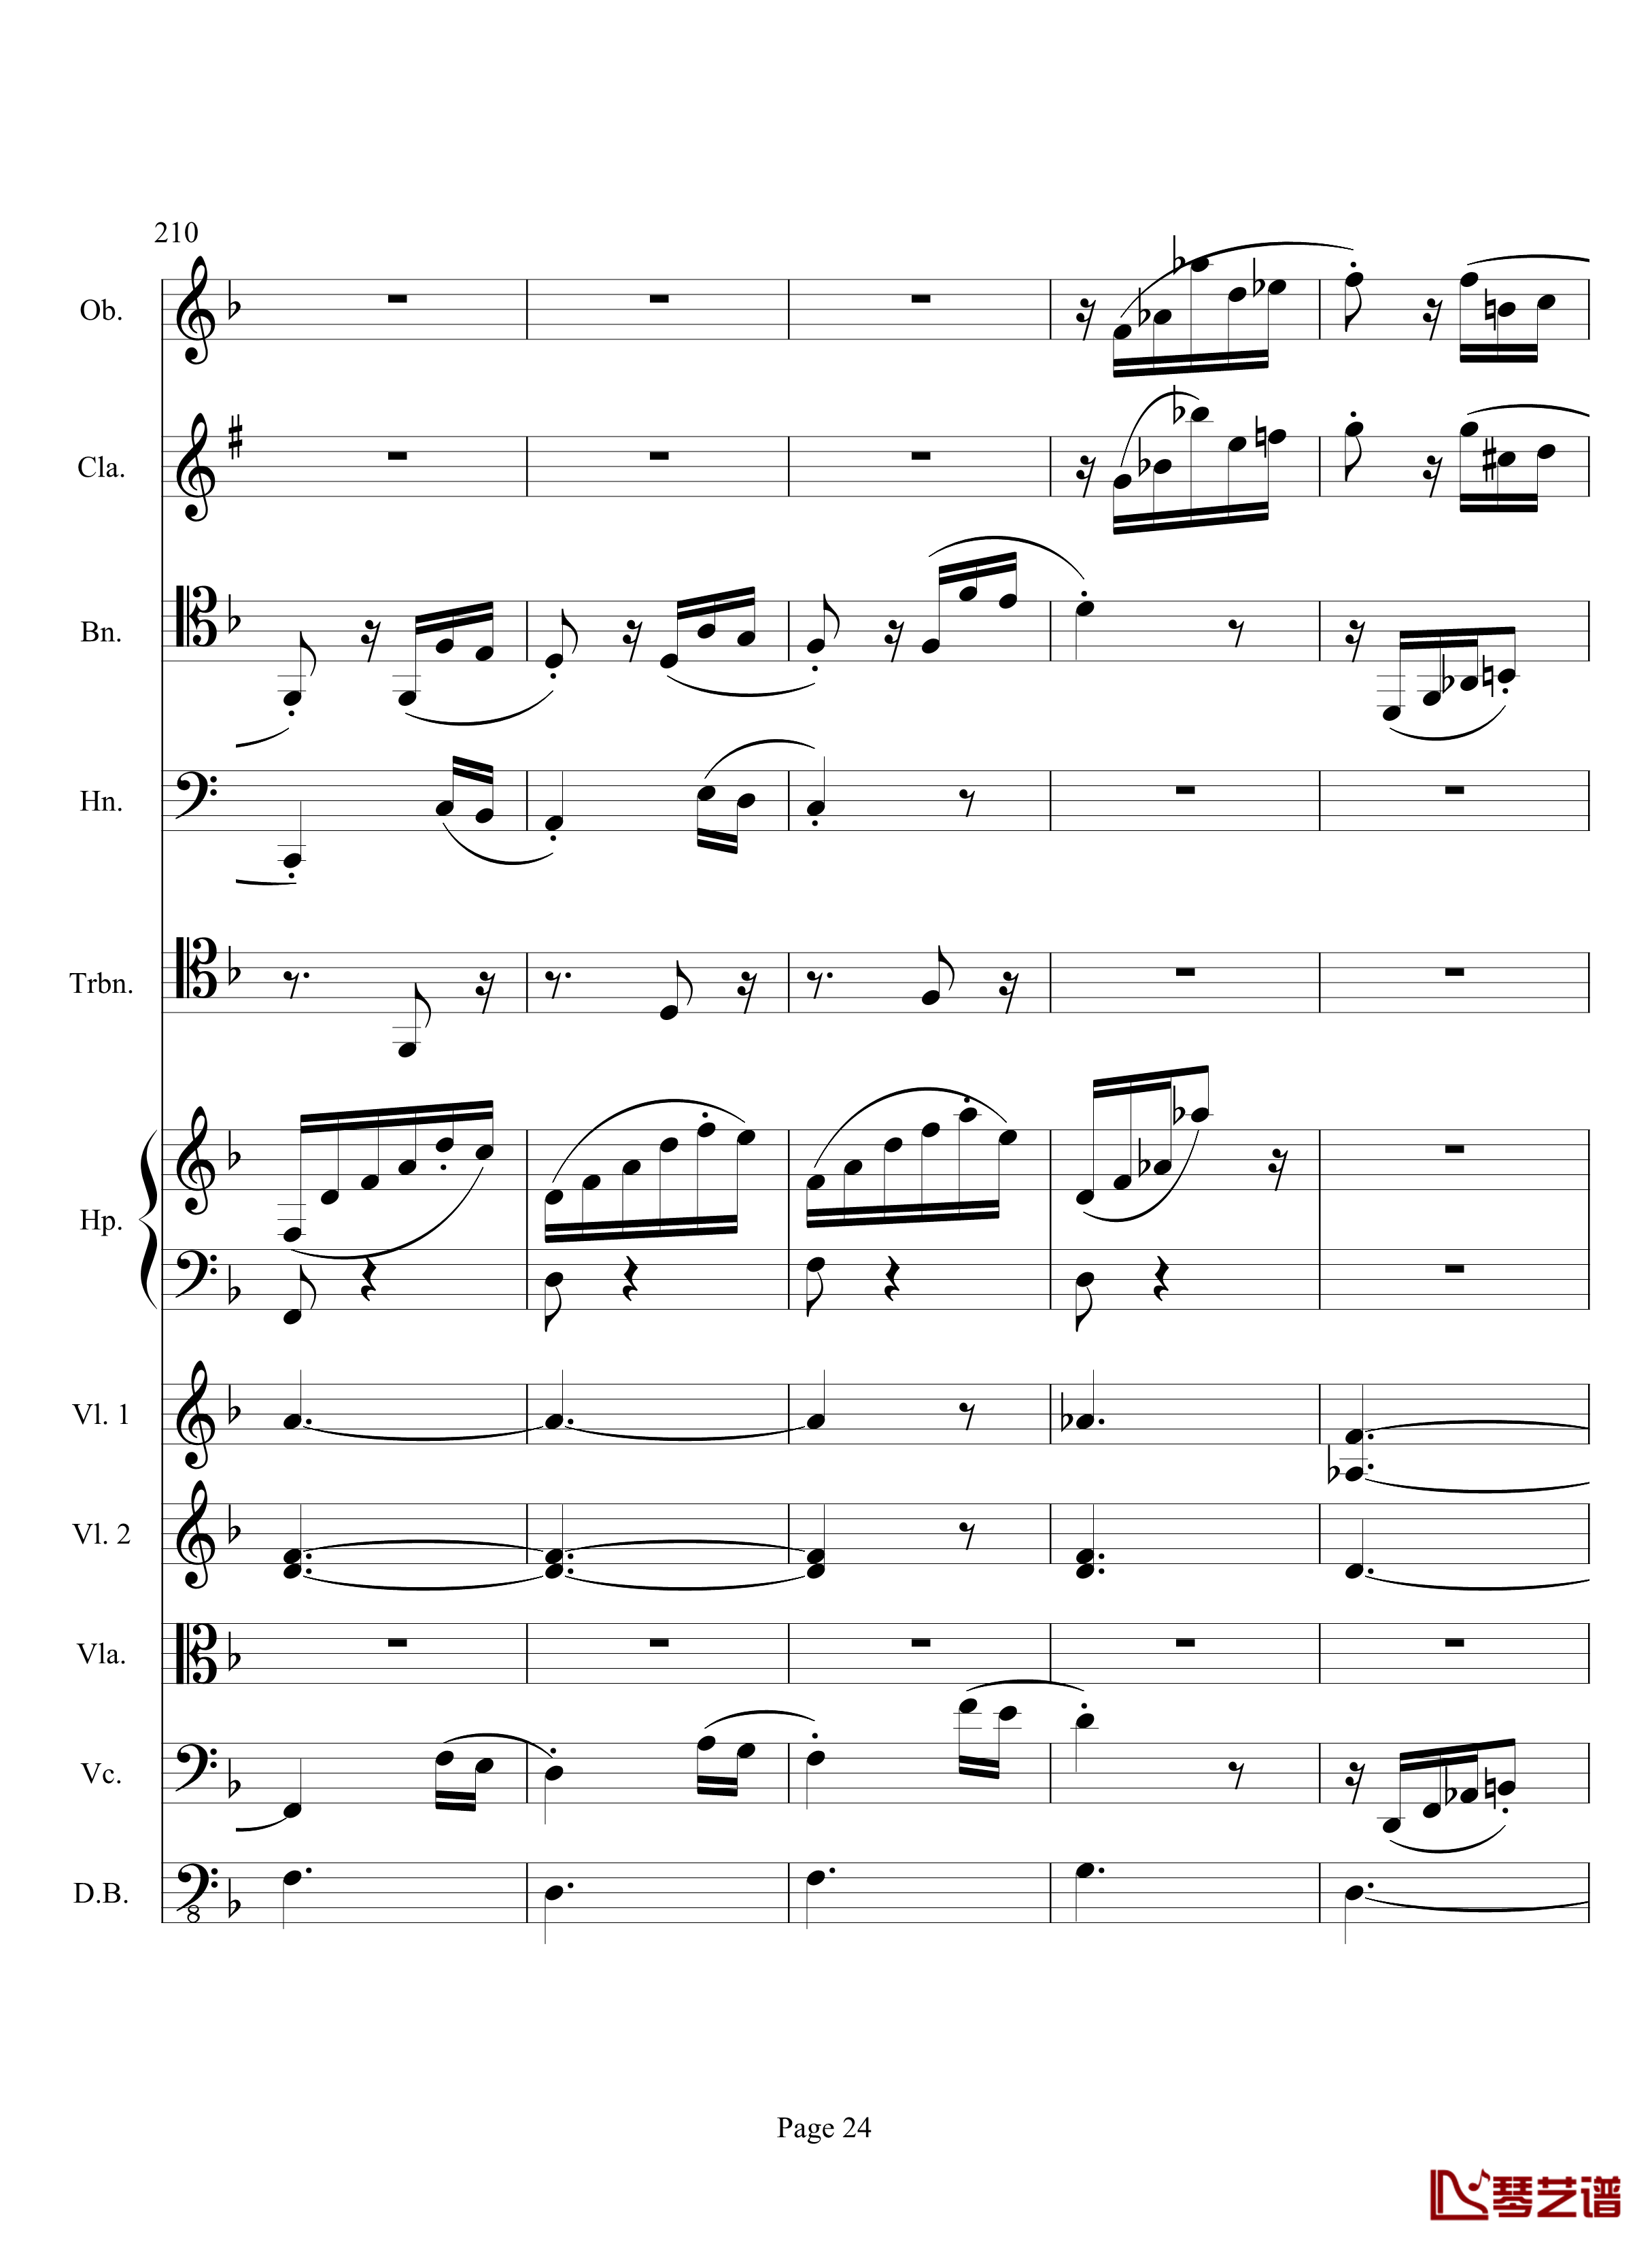 奏鸣曲之交响钢琴谱-第17首-Ⅲ-贝多芬-beethoven24